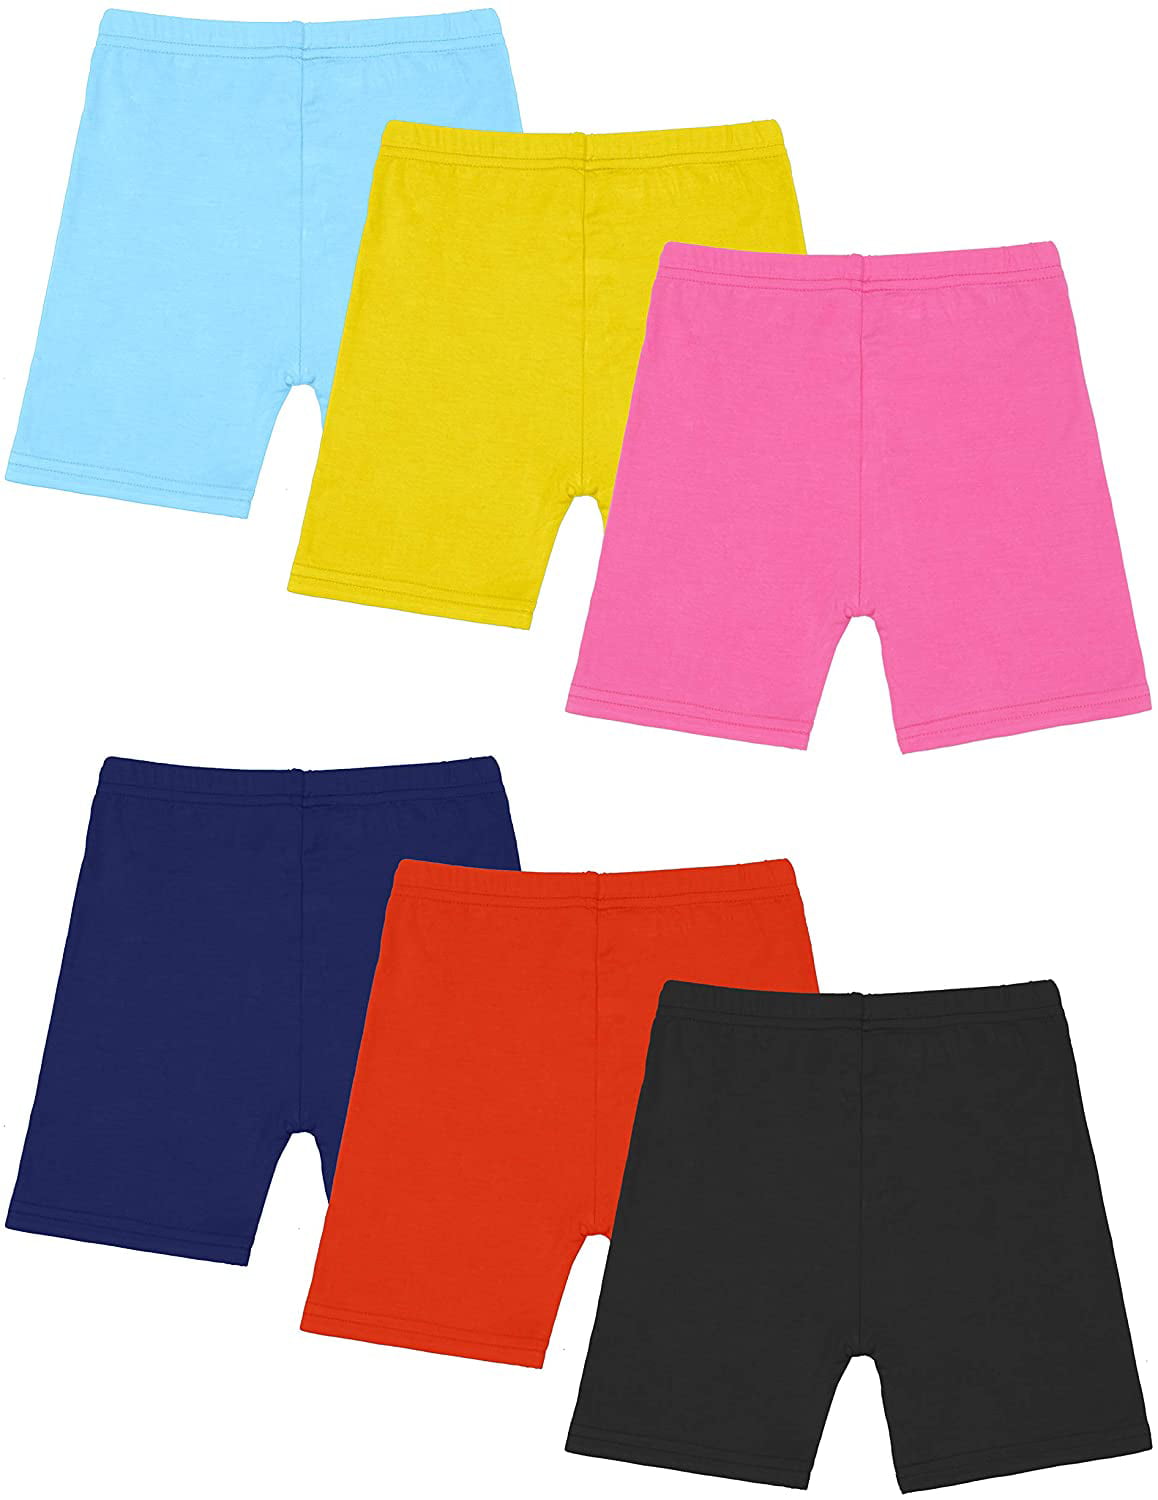 6 Pack Children Dance Shorts Girls Bike Short Pants Breathable Safety 6 Color 